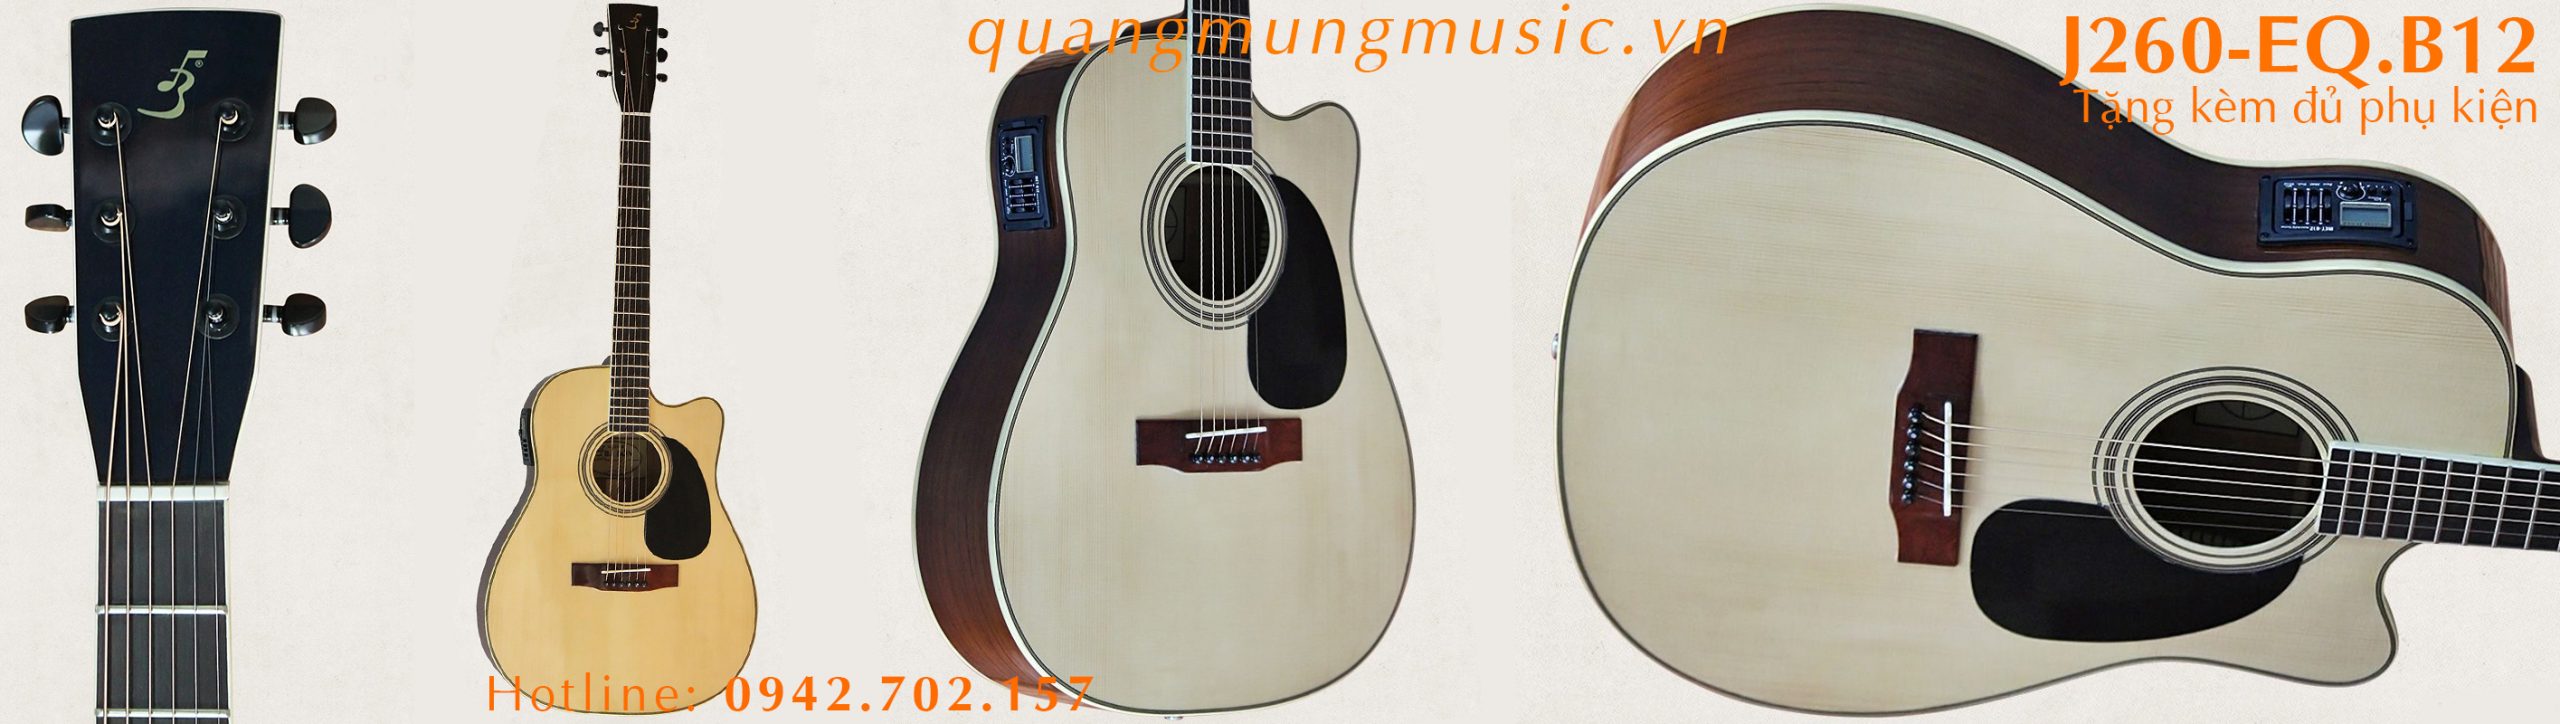 dan-guitar-acoustic-J260-EQ-B12